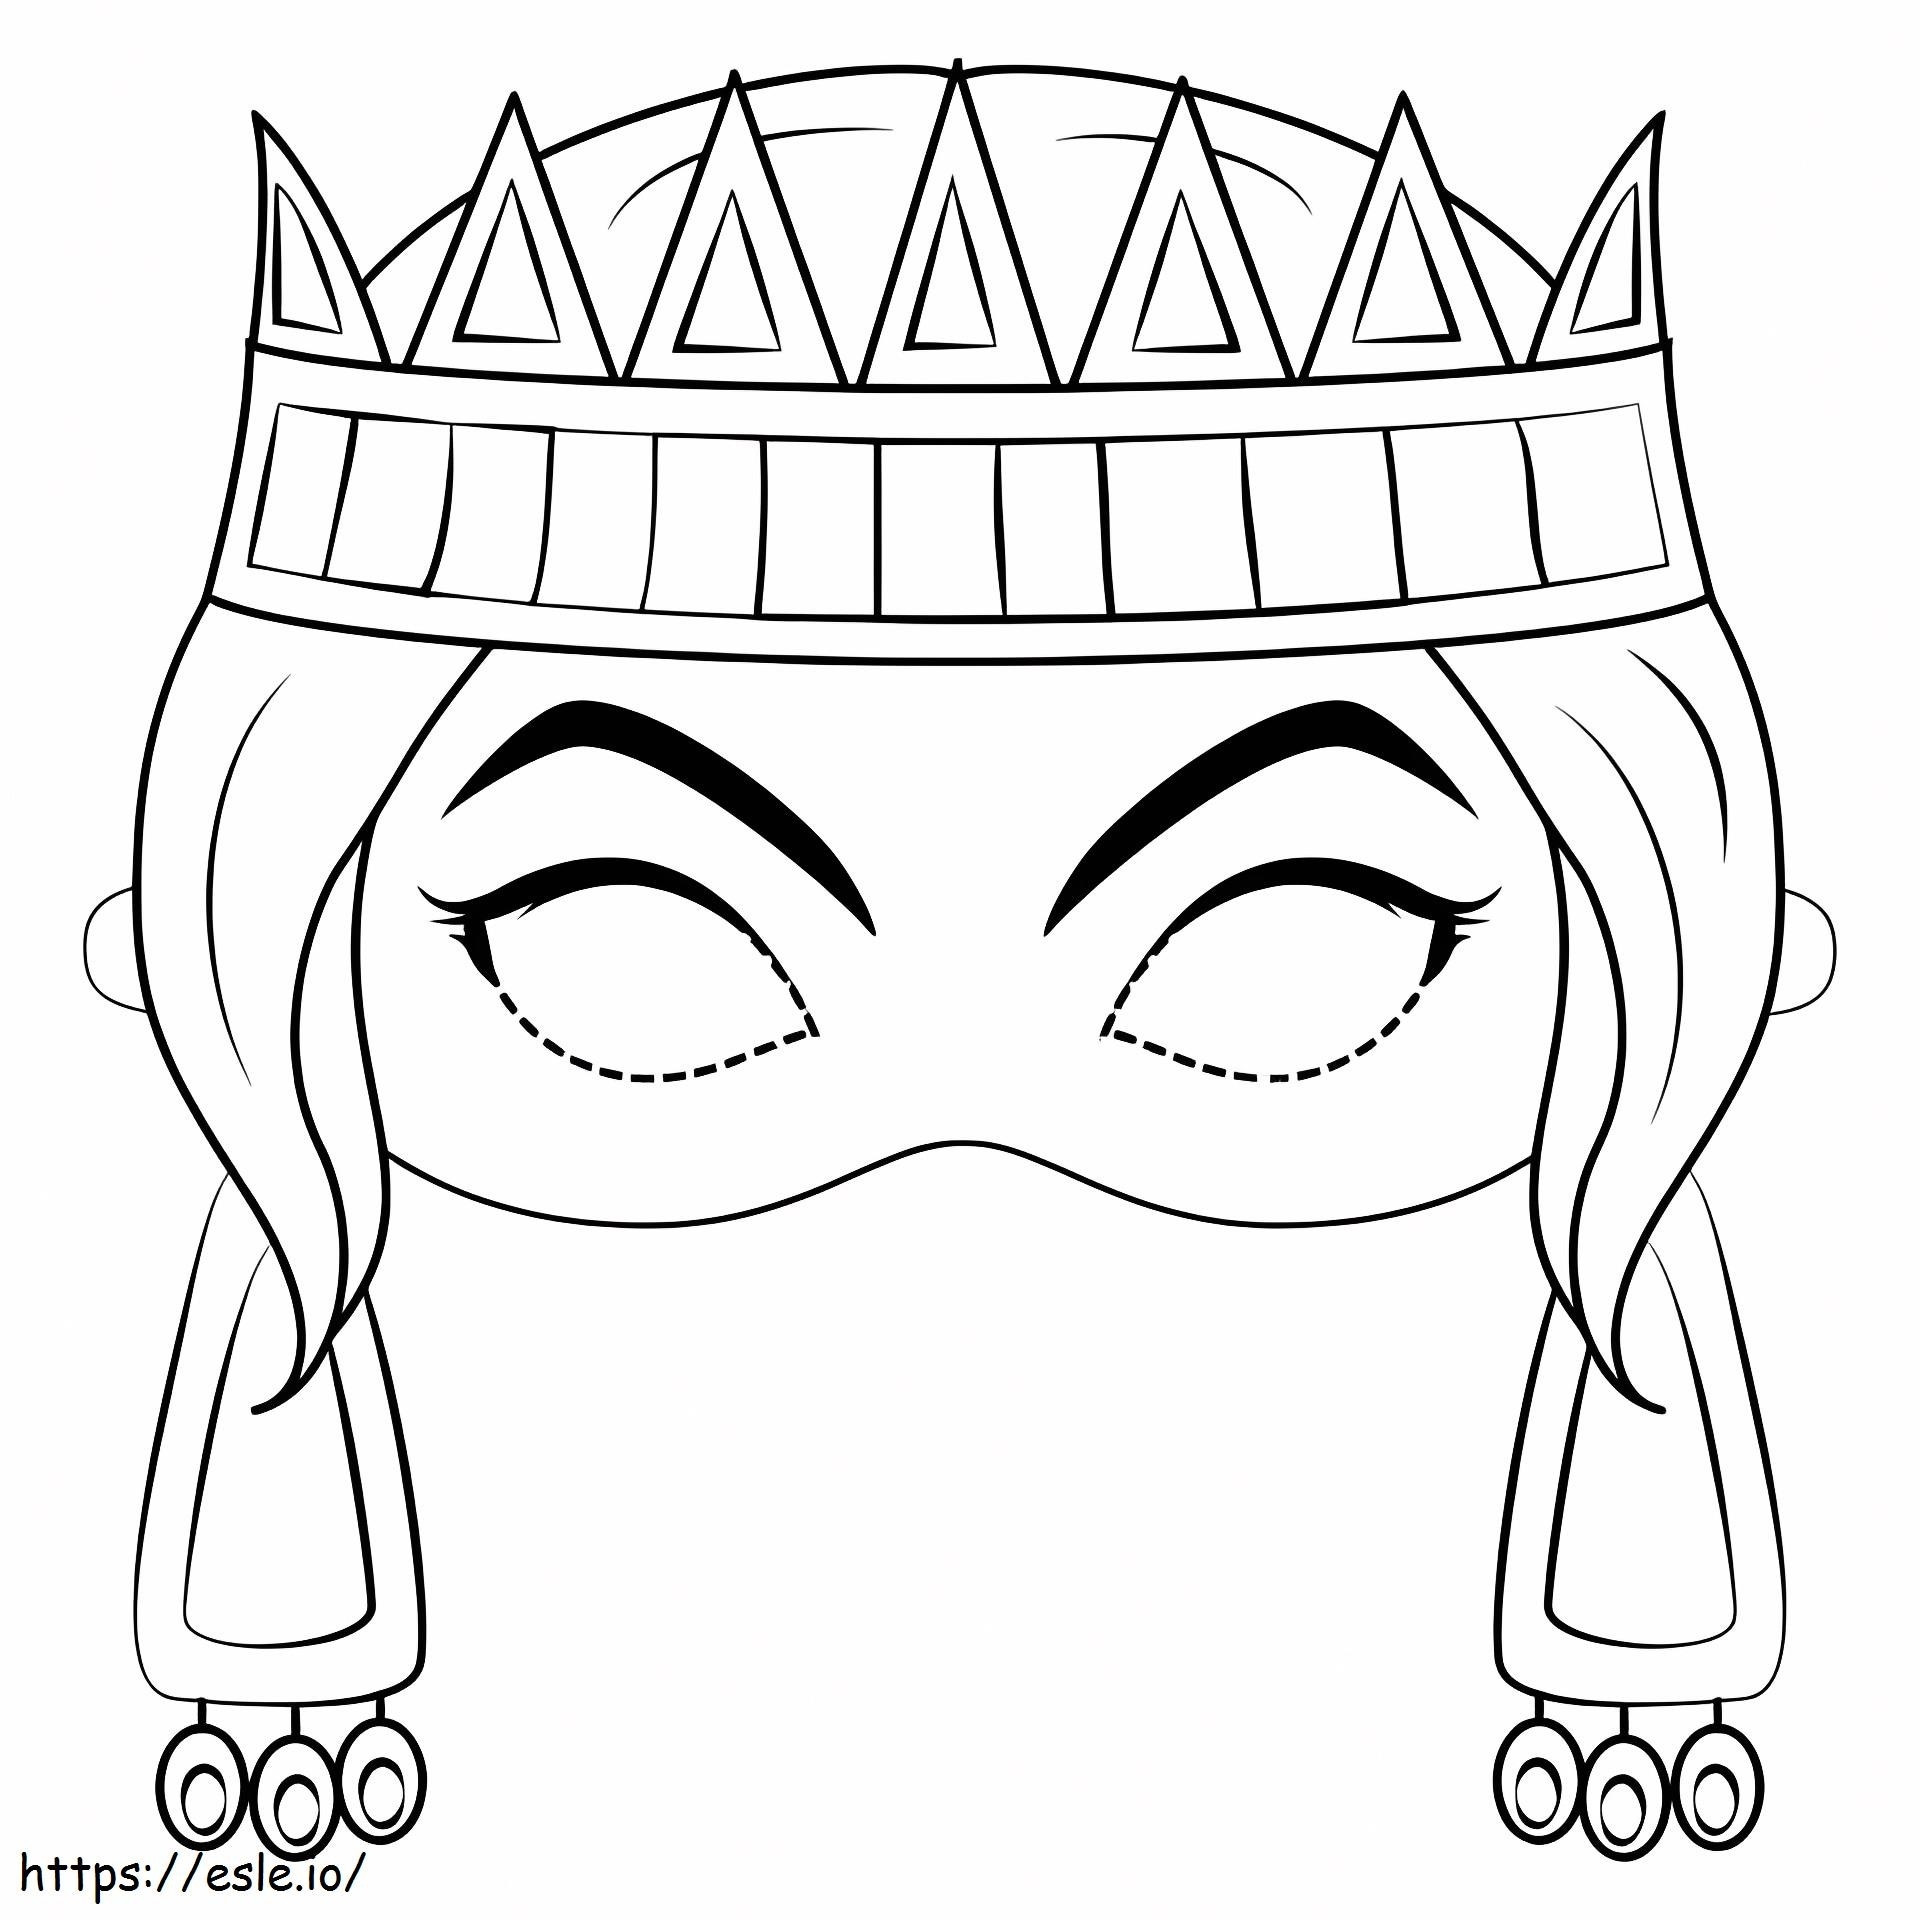 Kraliçe Maskesi boyama